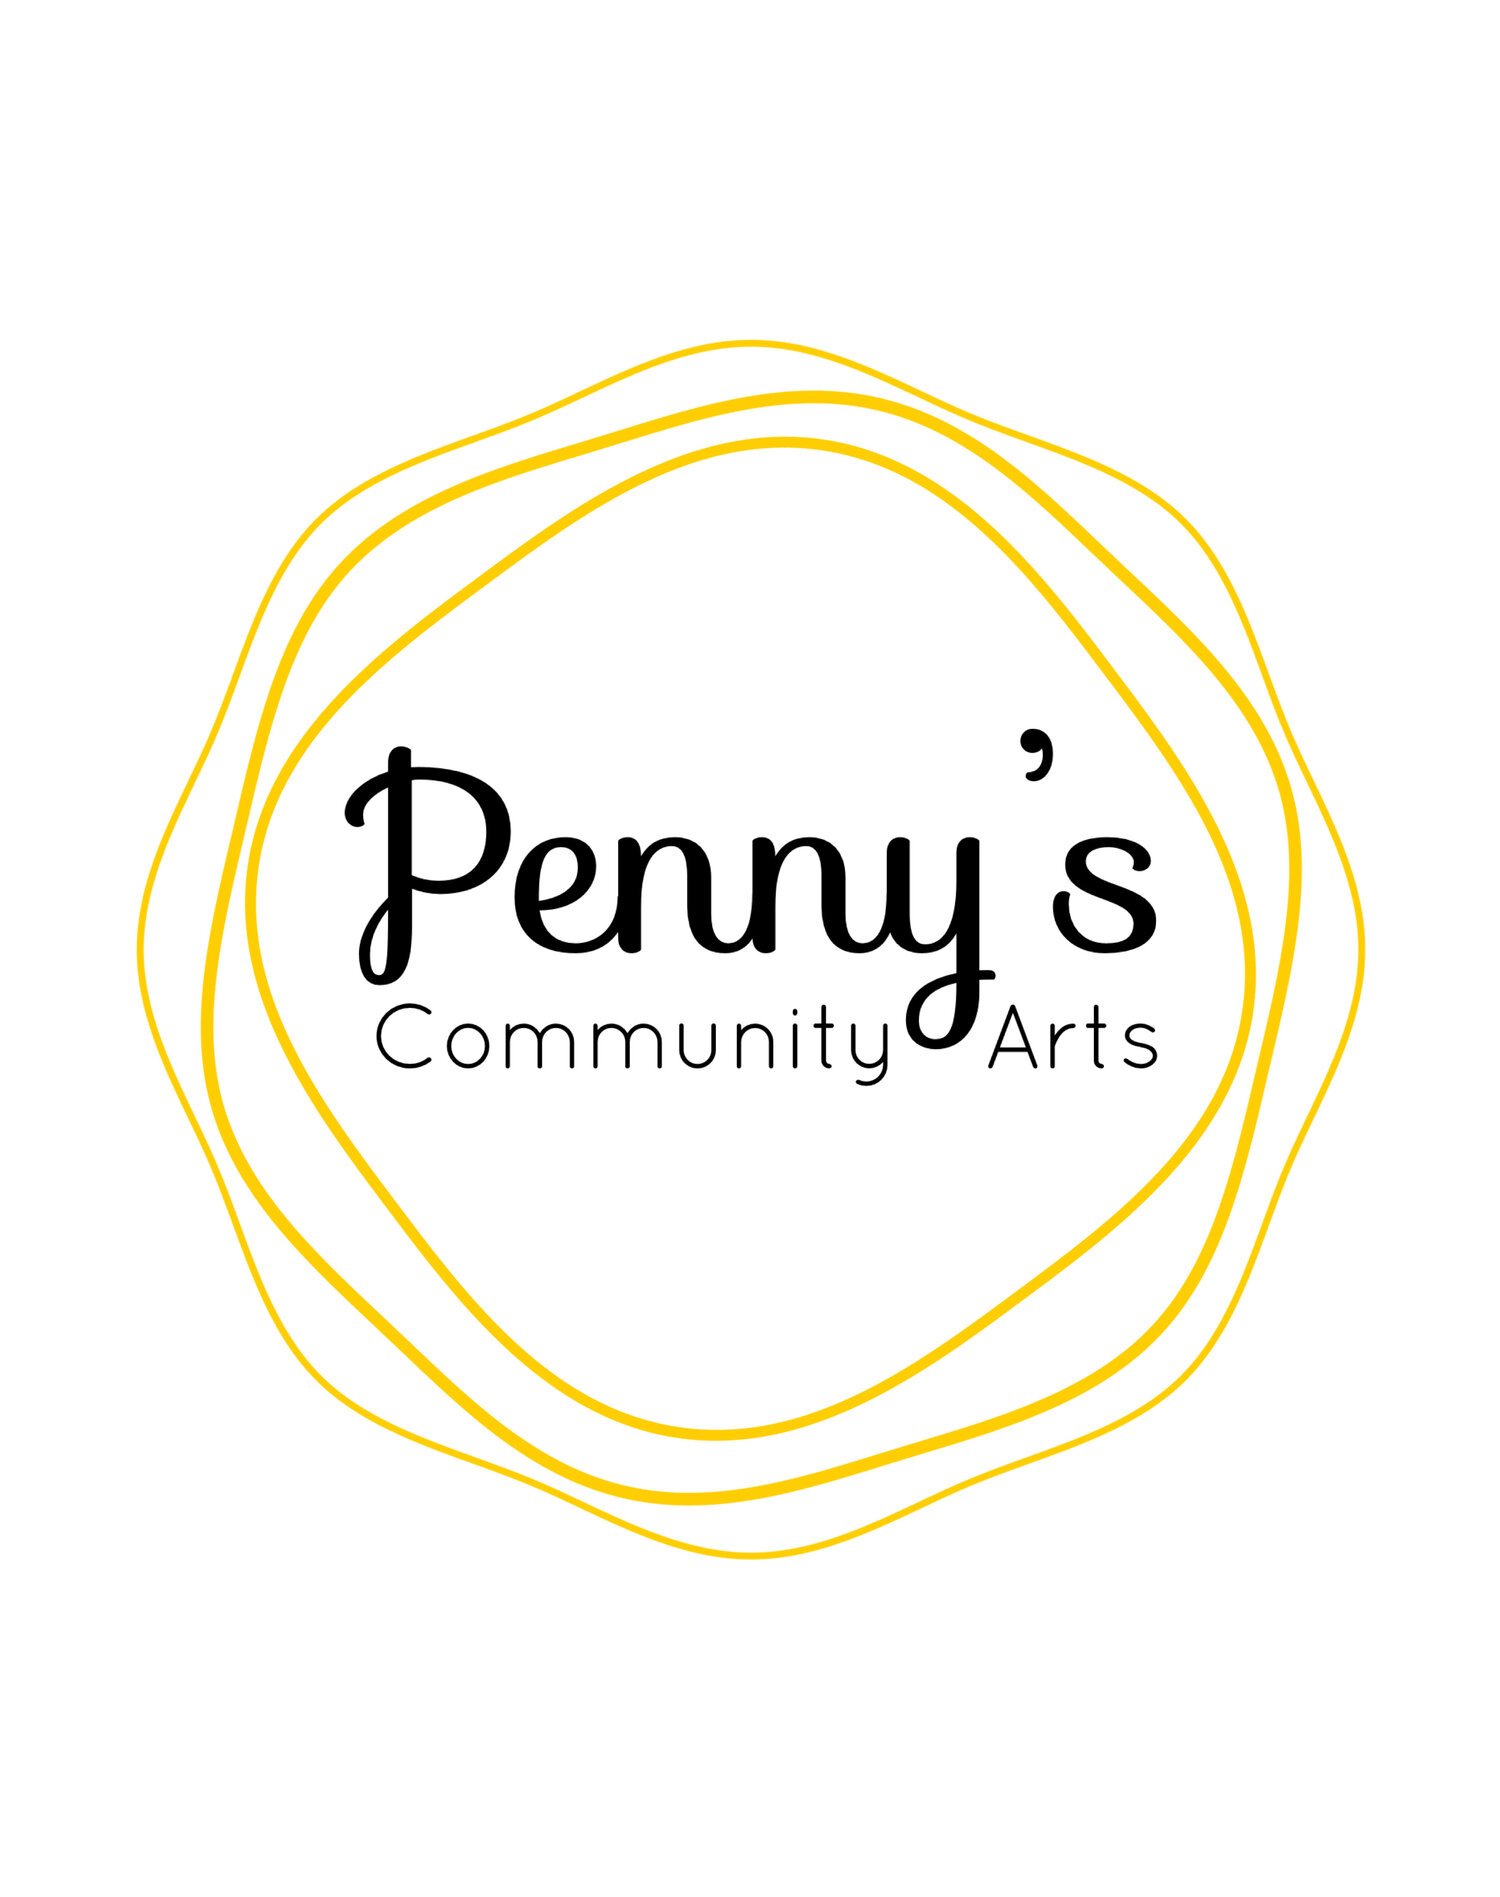 Penny's Community Arts logo